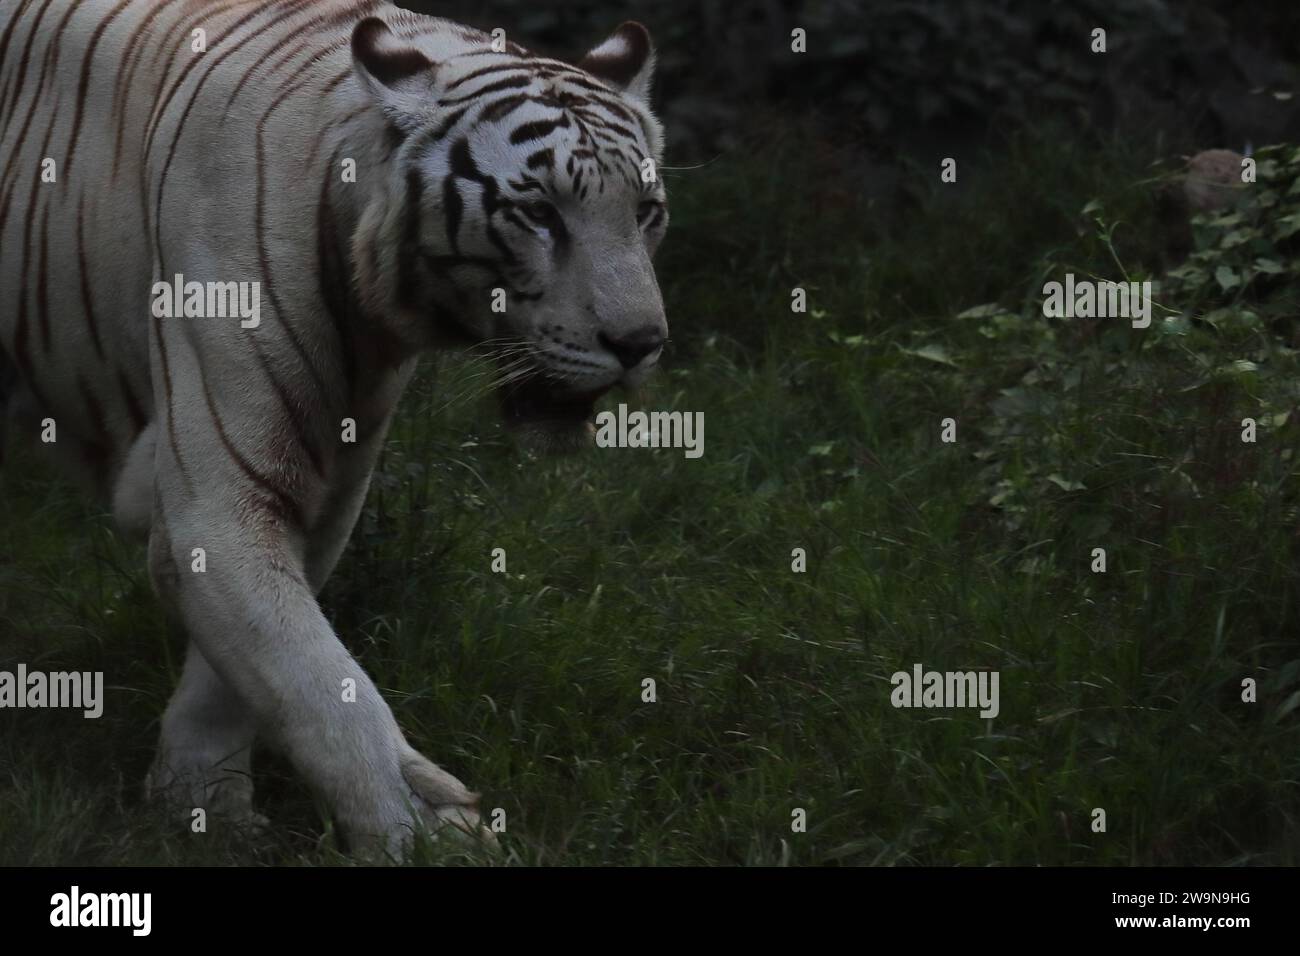 grande tigre bengala o tigre indiana (panthera tigris) di colore bianco con sfondo scuro Foto Stock